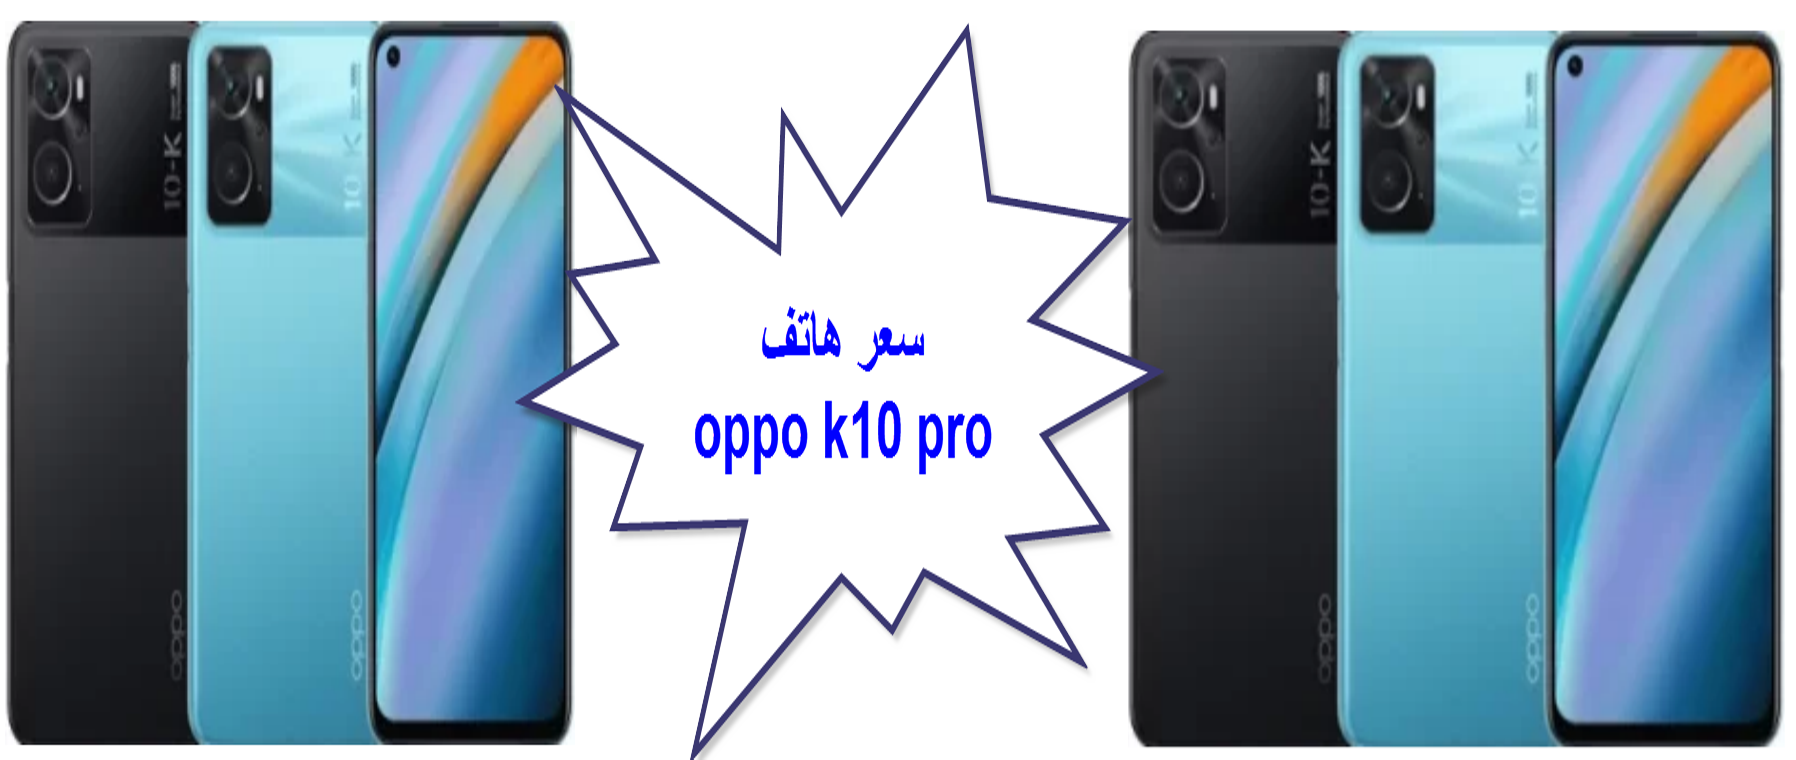 سعر ومواصفات هاتف Oppo K10 Pro  في السعودية ومصر والإمارات/ مراجعة أوبو كي10 برو الجديد وأهم مميزاته